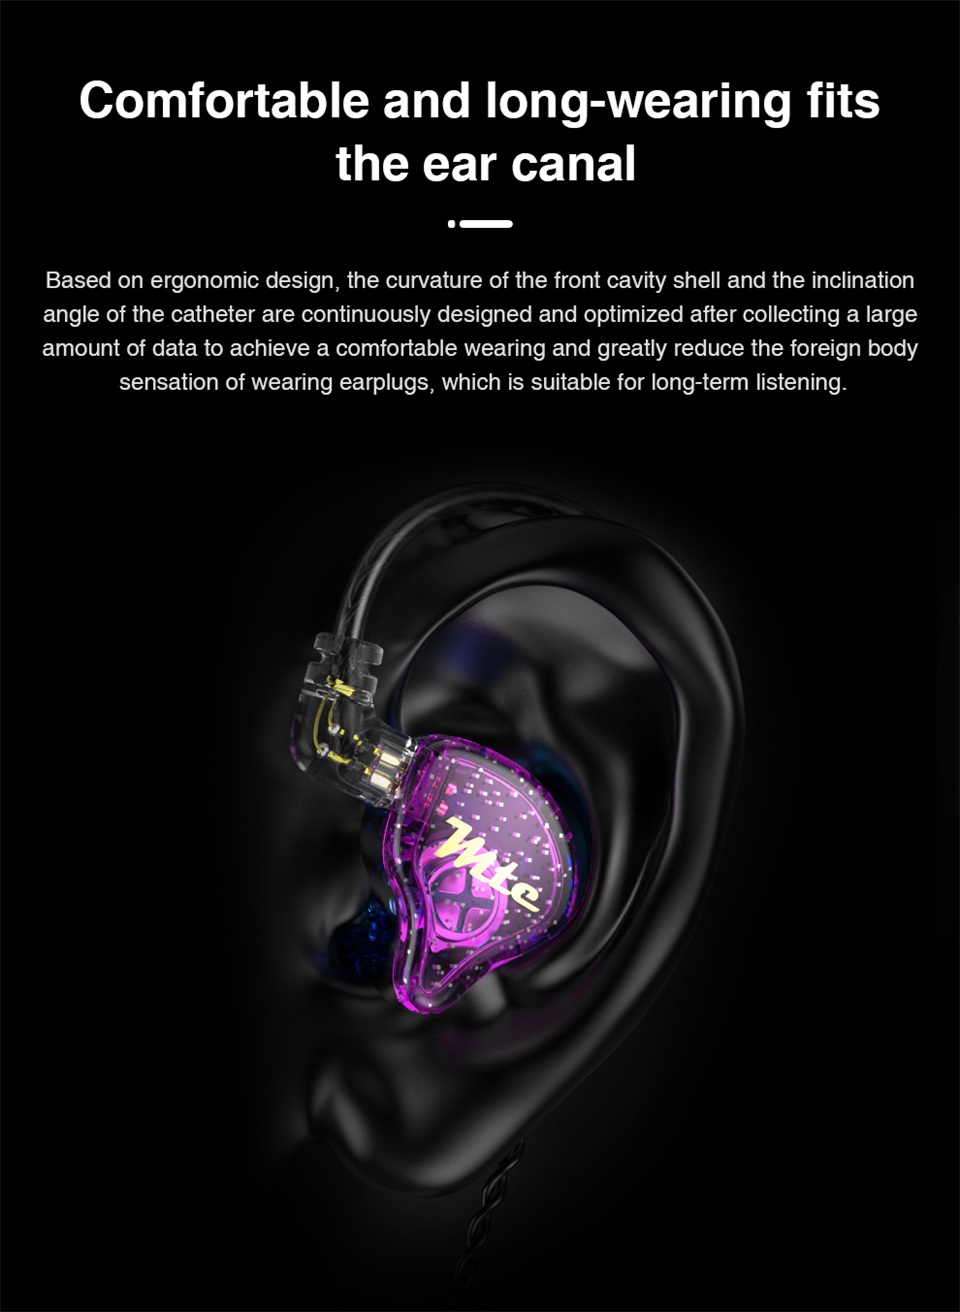 TRN MTE Dynamic Earphones HIFI Music Sport Earbuds In Ear Earphones Sport Noise Cancelling Hea for TRN VXpro M10 MT1 V90 EDX Pro